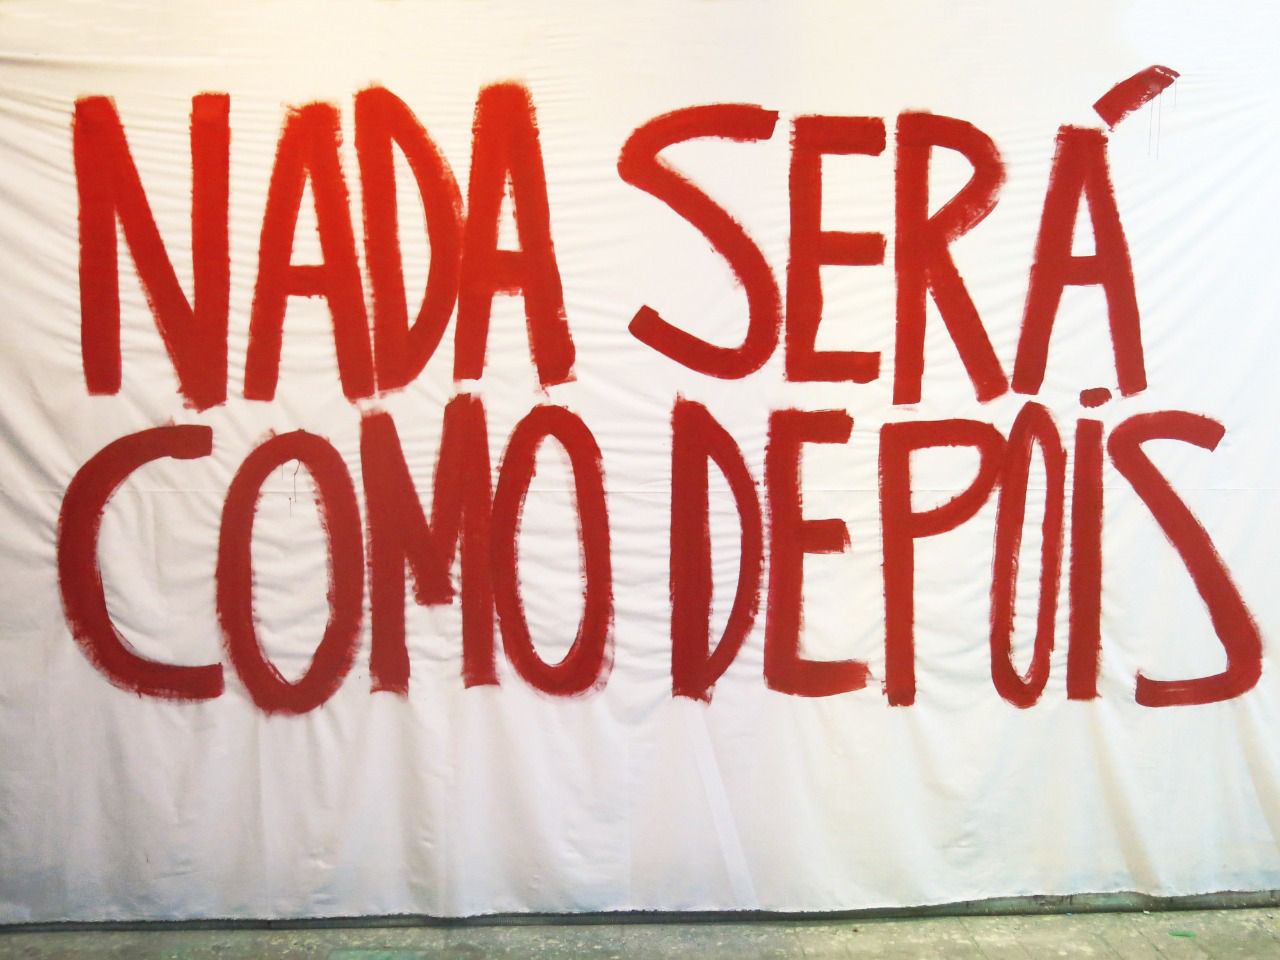 arte: tela branca com escrita em vermelho e letras garrafais: NADA SERÁ COMO DEPOIS.